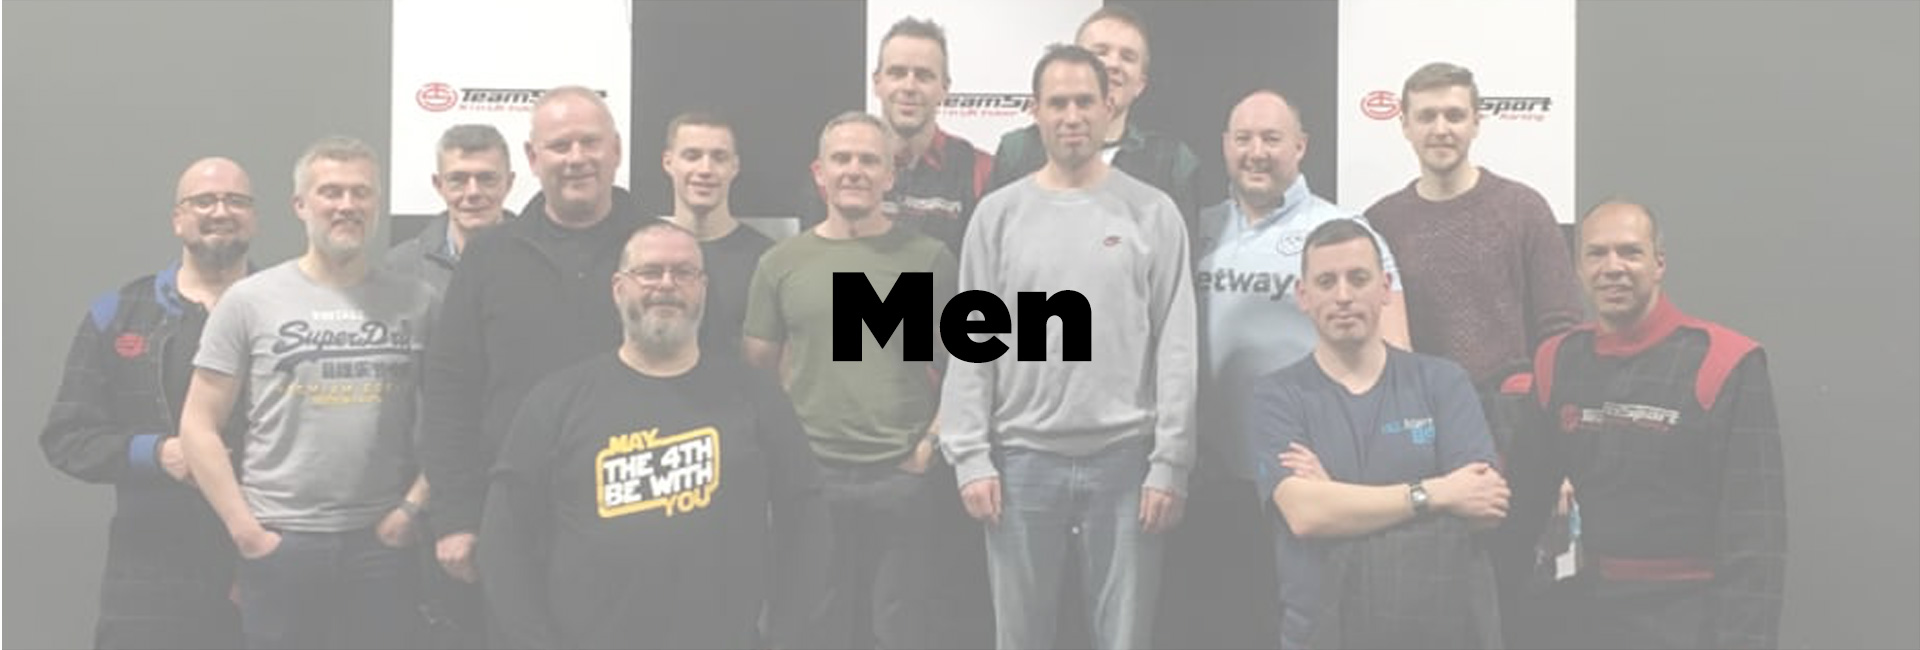 men-header